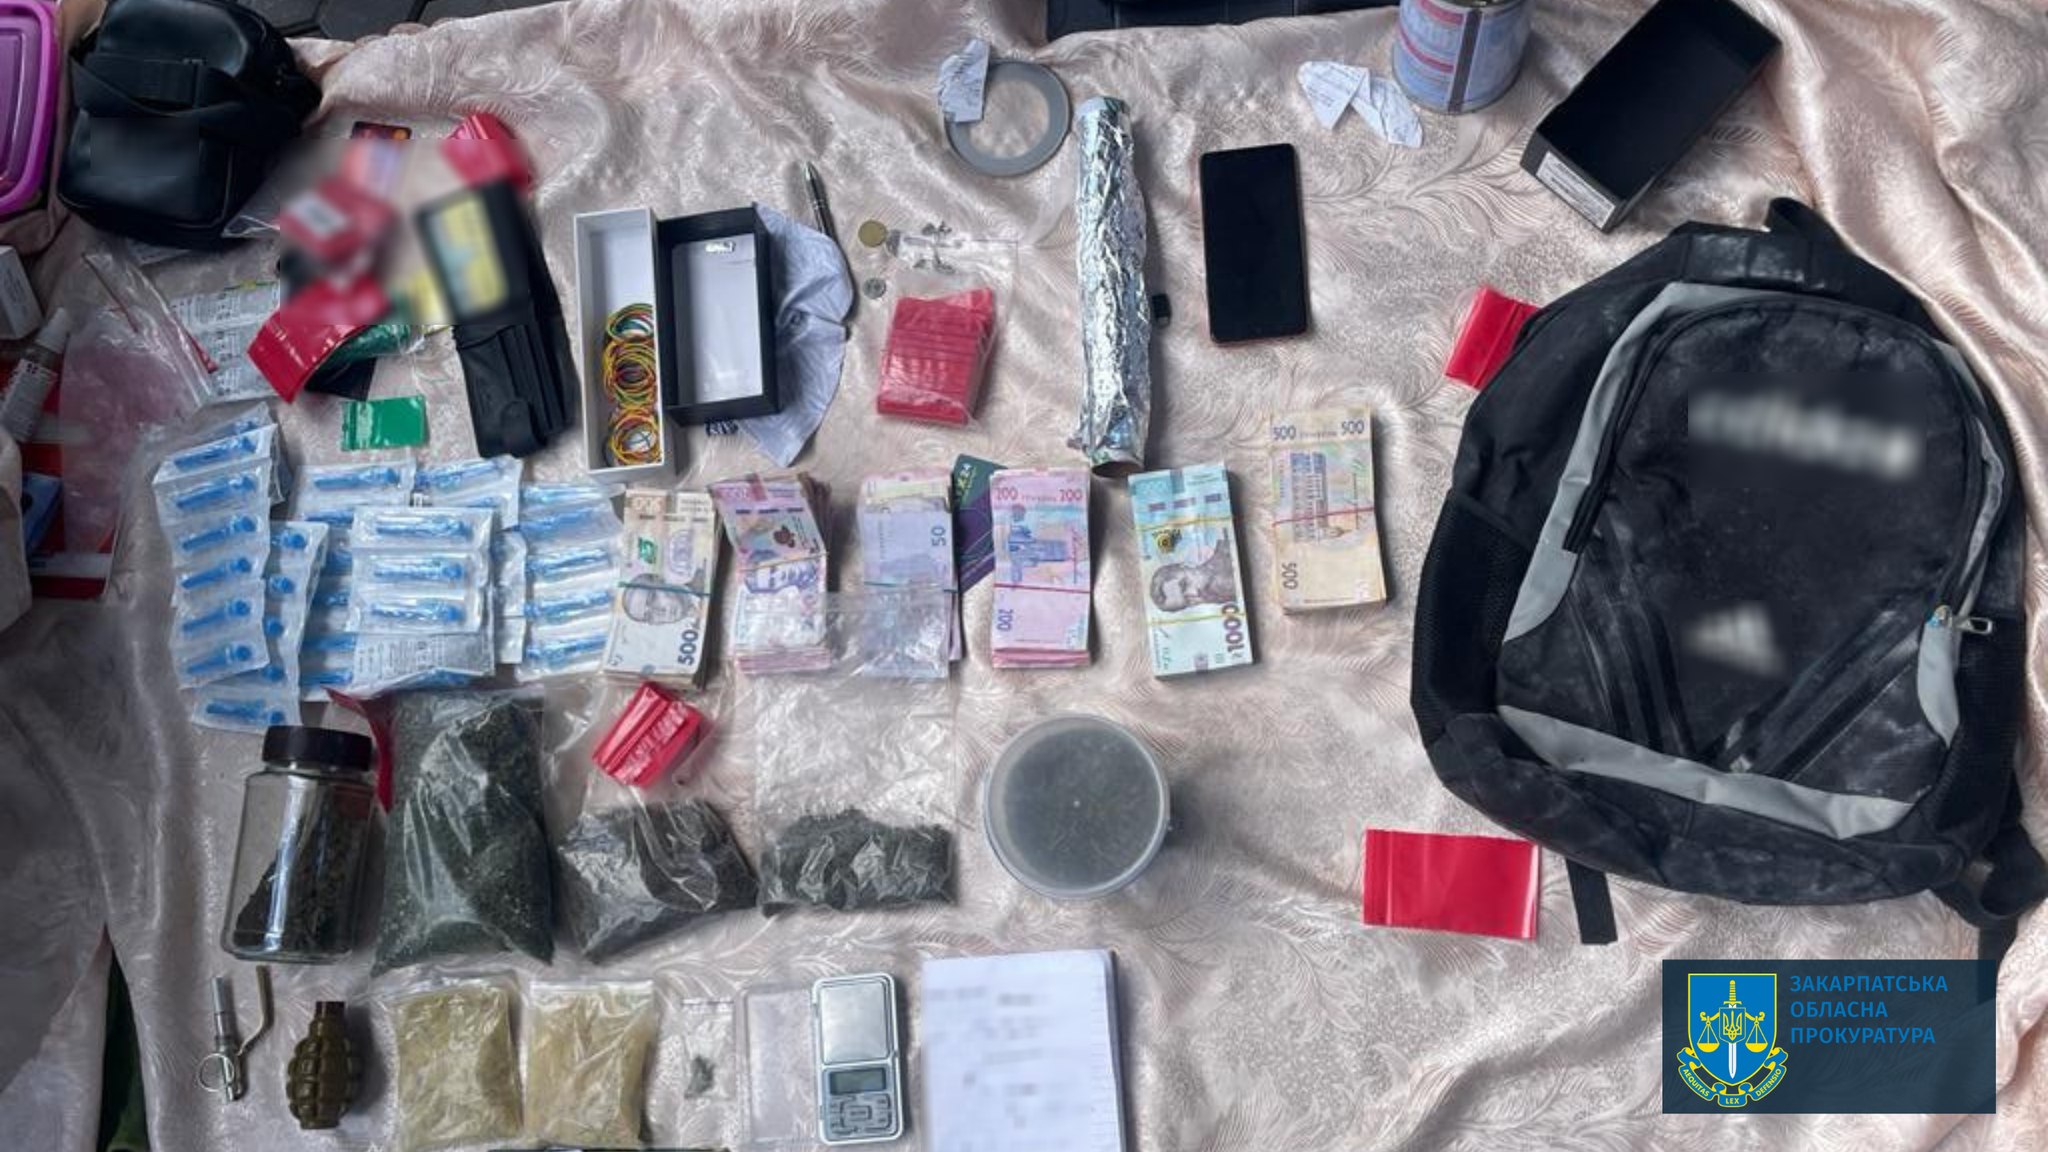 Д 9 років тюрми засудили мешканця Мукачева за торгівлю метамфетаміном, зберігання наркотиків і психотропів (ФОТО)